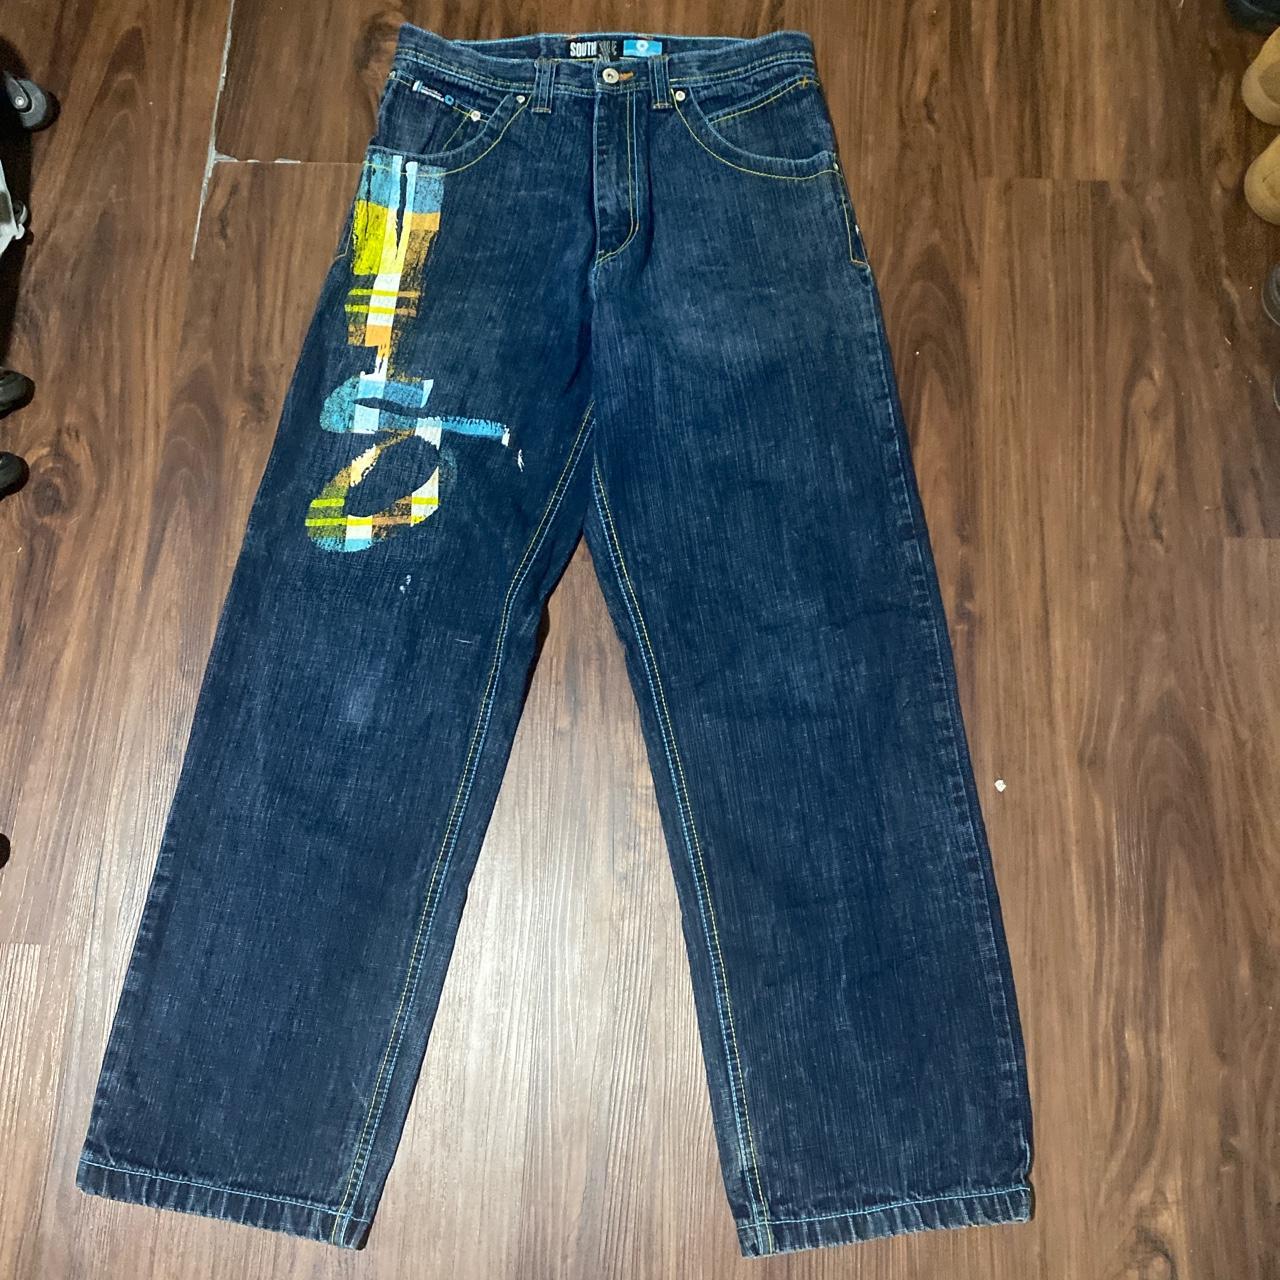 southpoles jeans men’s 32x32 good condition - Depop